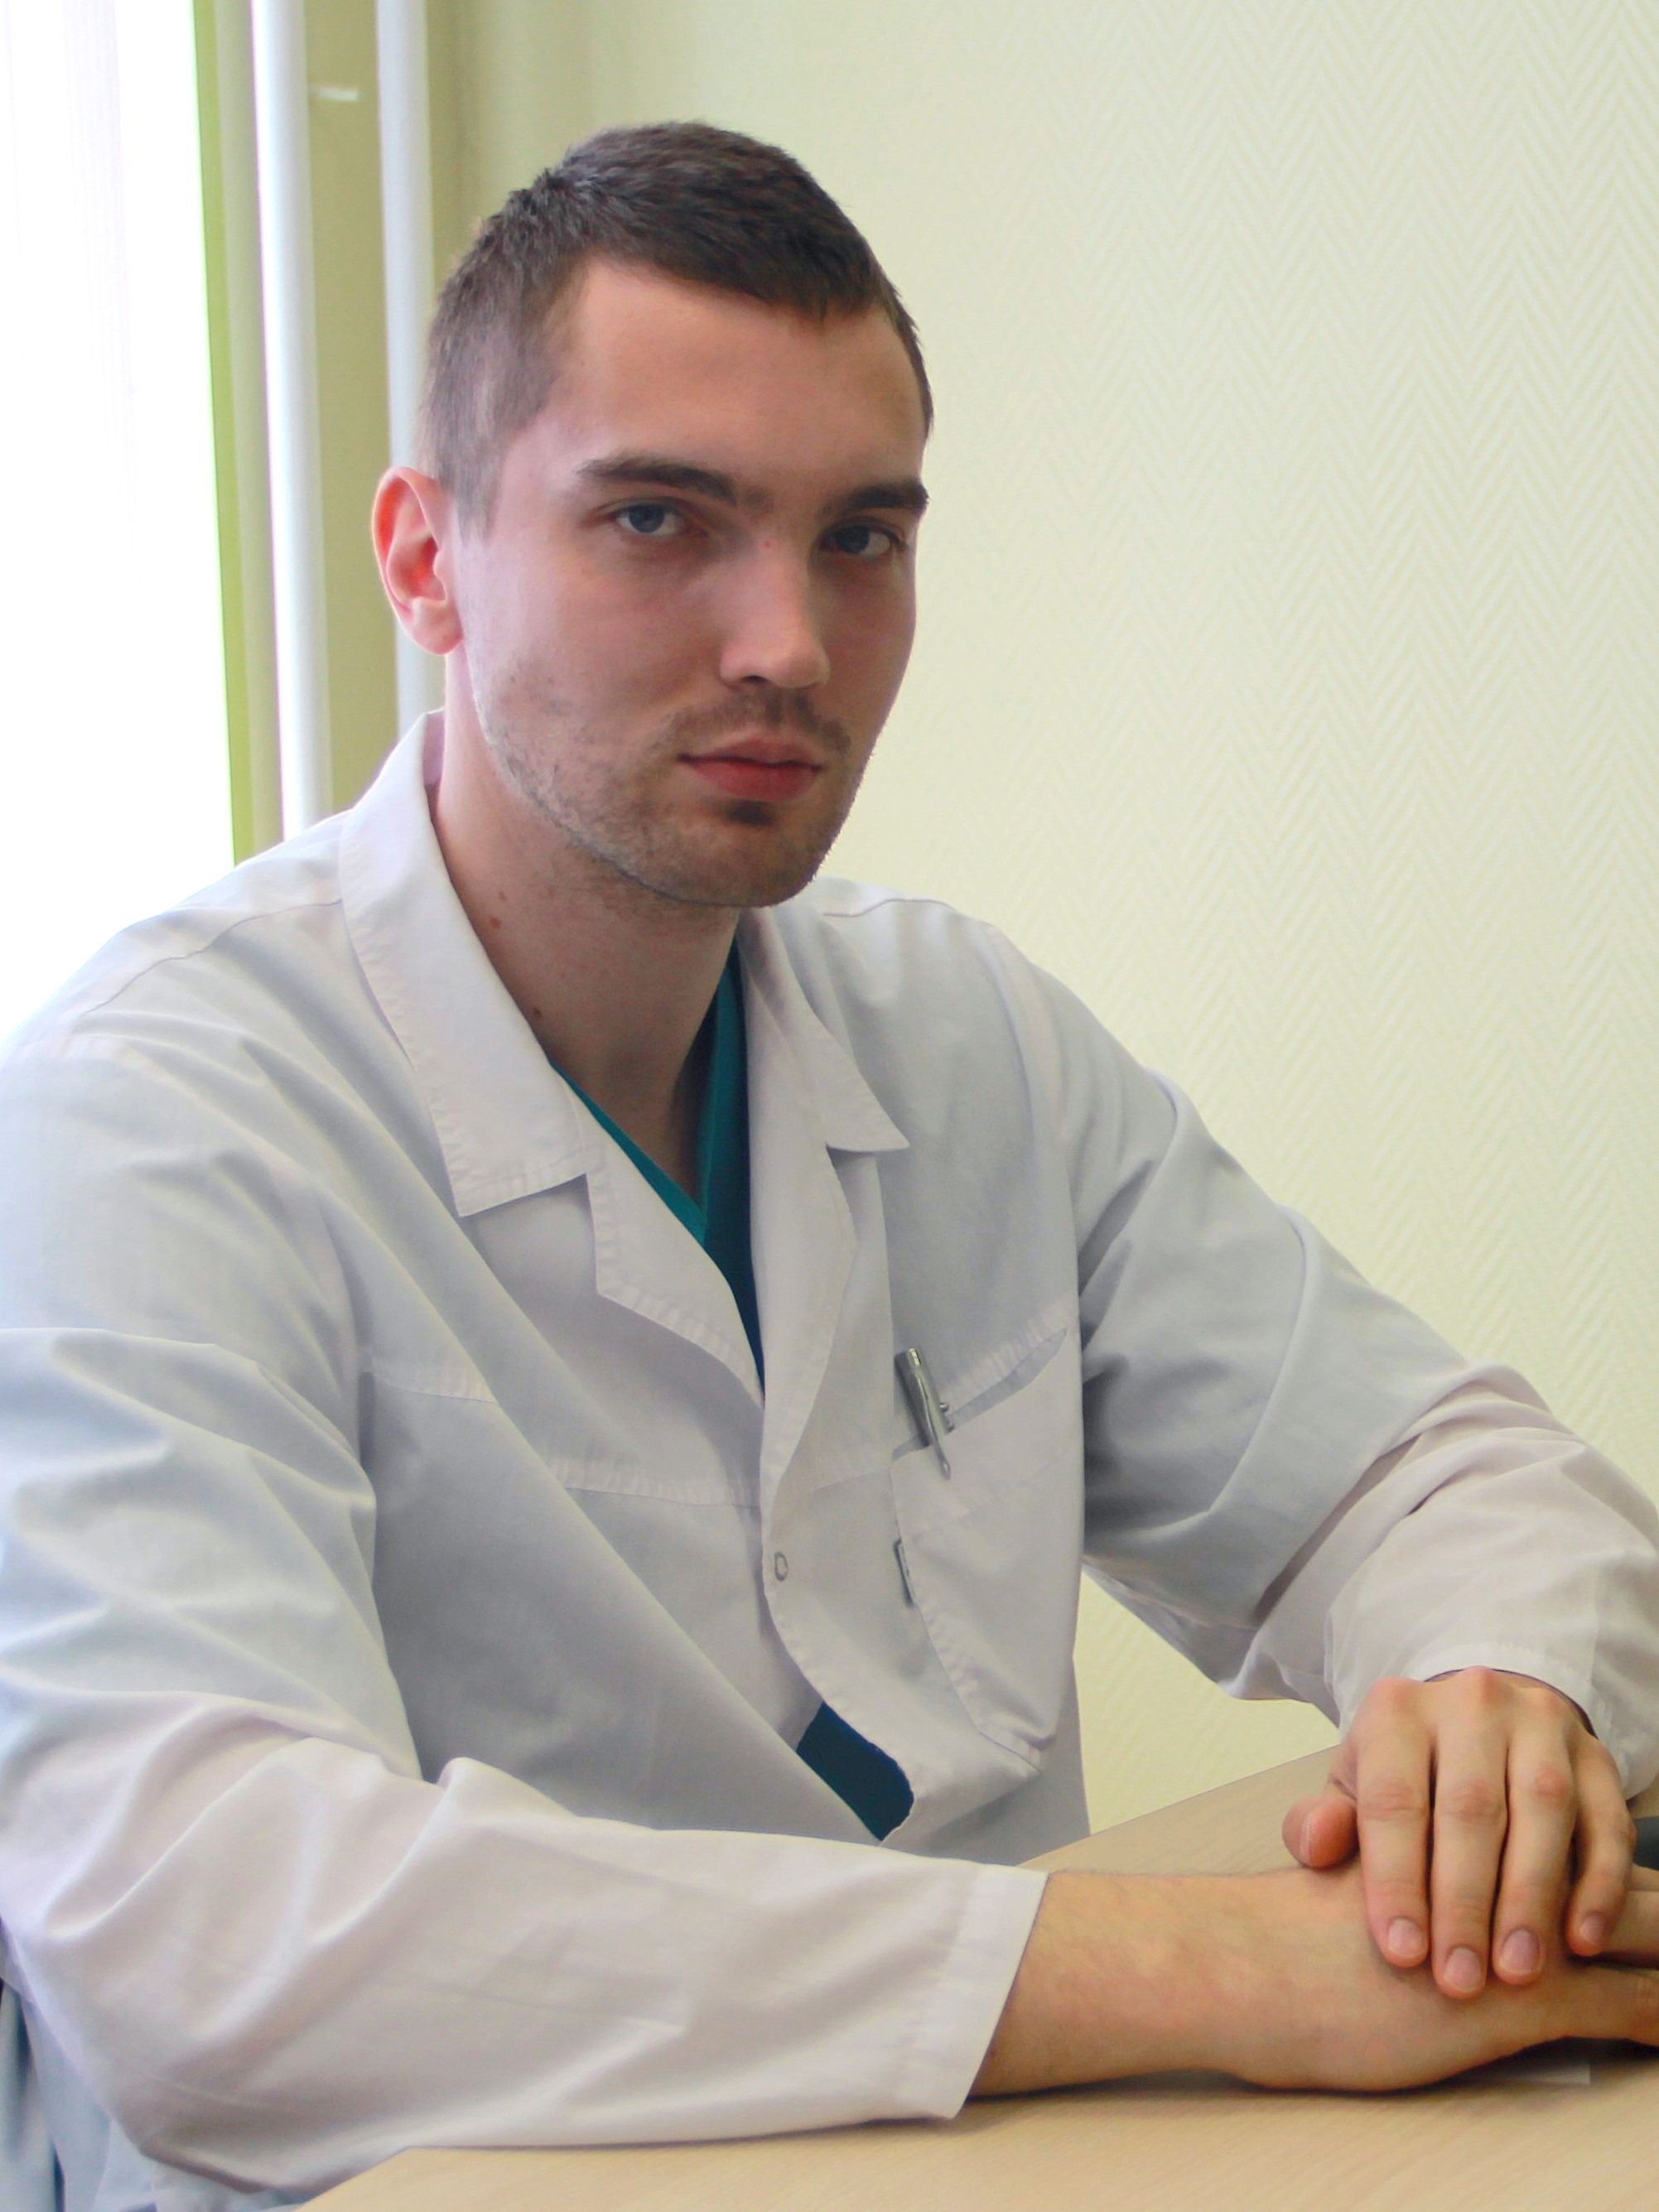 Федоров Дмитрий Александрович, кафедра урологии с курсом роботической хирургии с клиникой